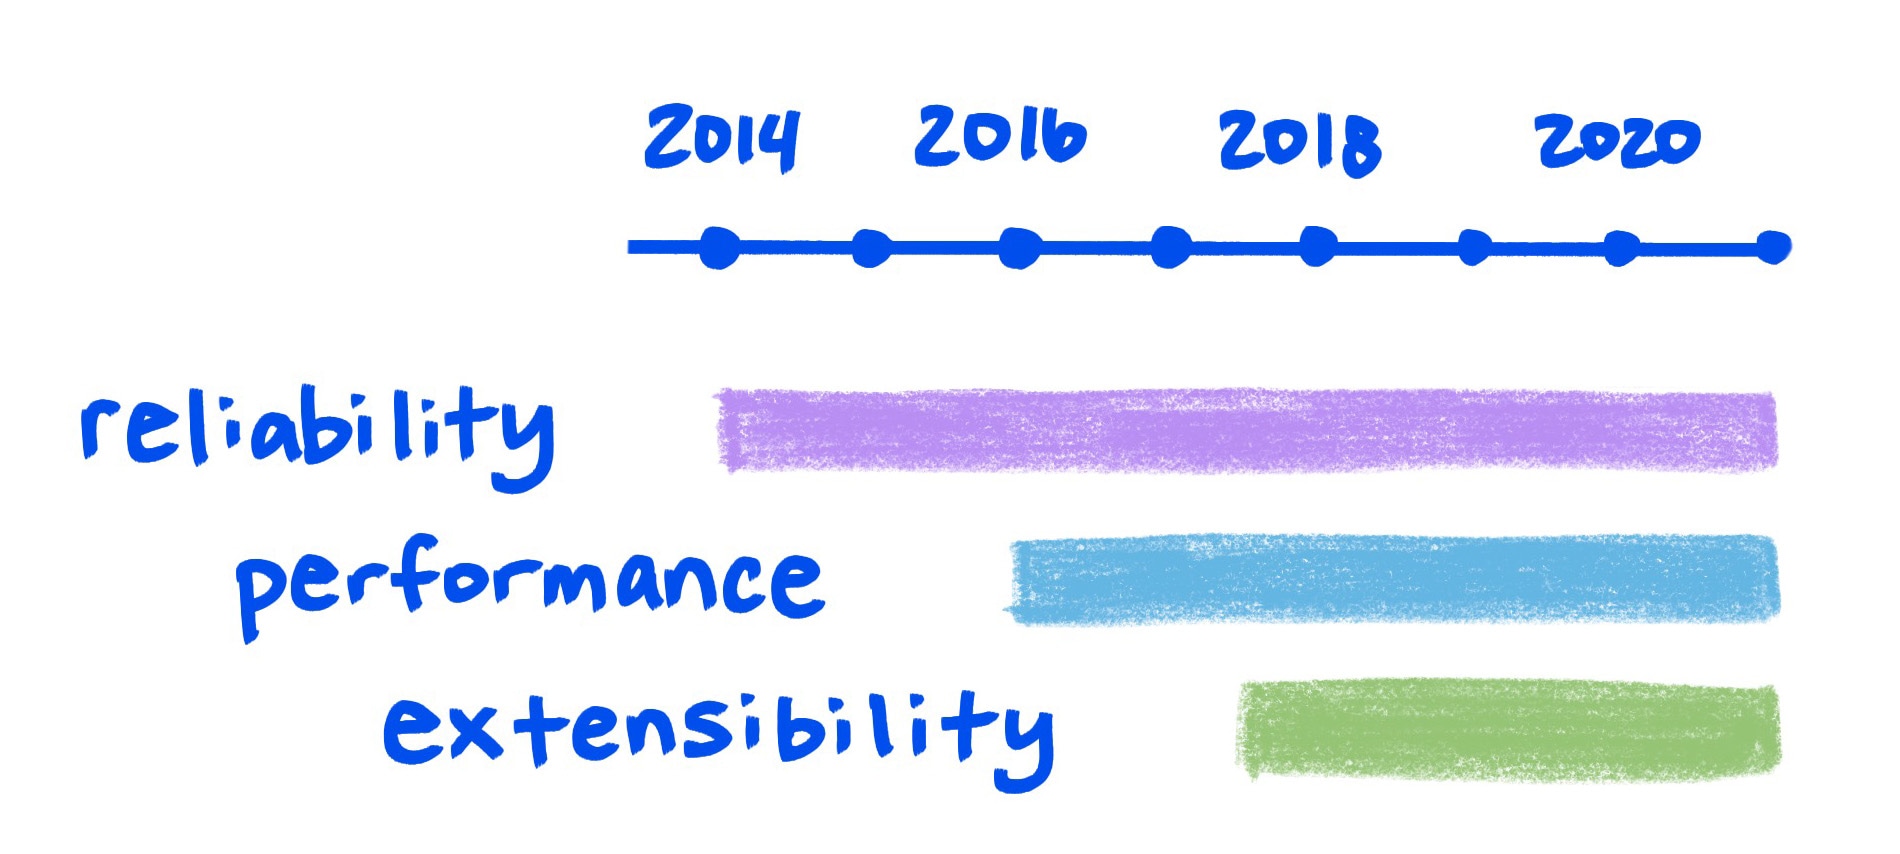 시간 경과에 따라 향상되는 안정성, 성능, 확장성을 보여주는 스케치 그래프